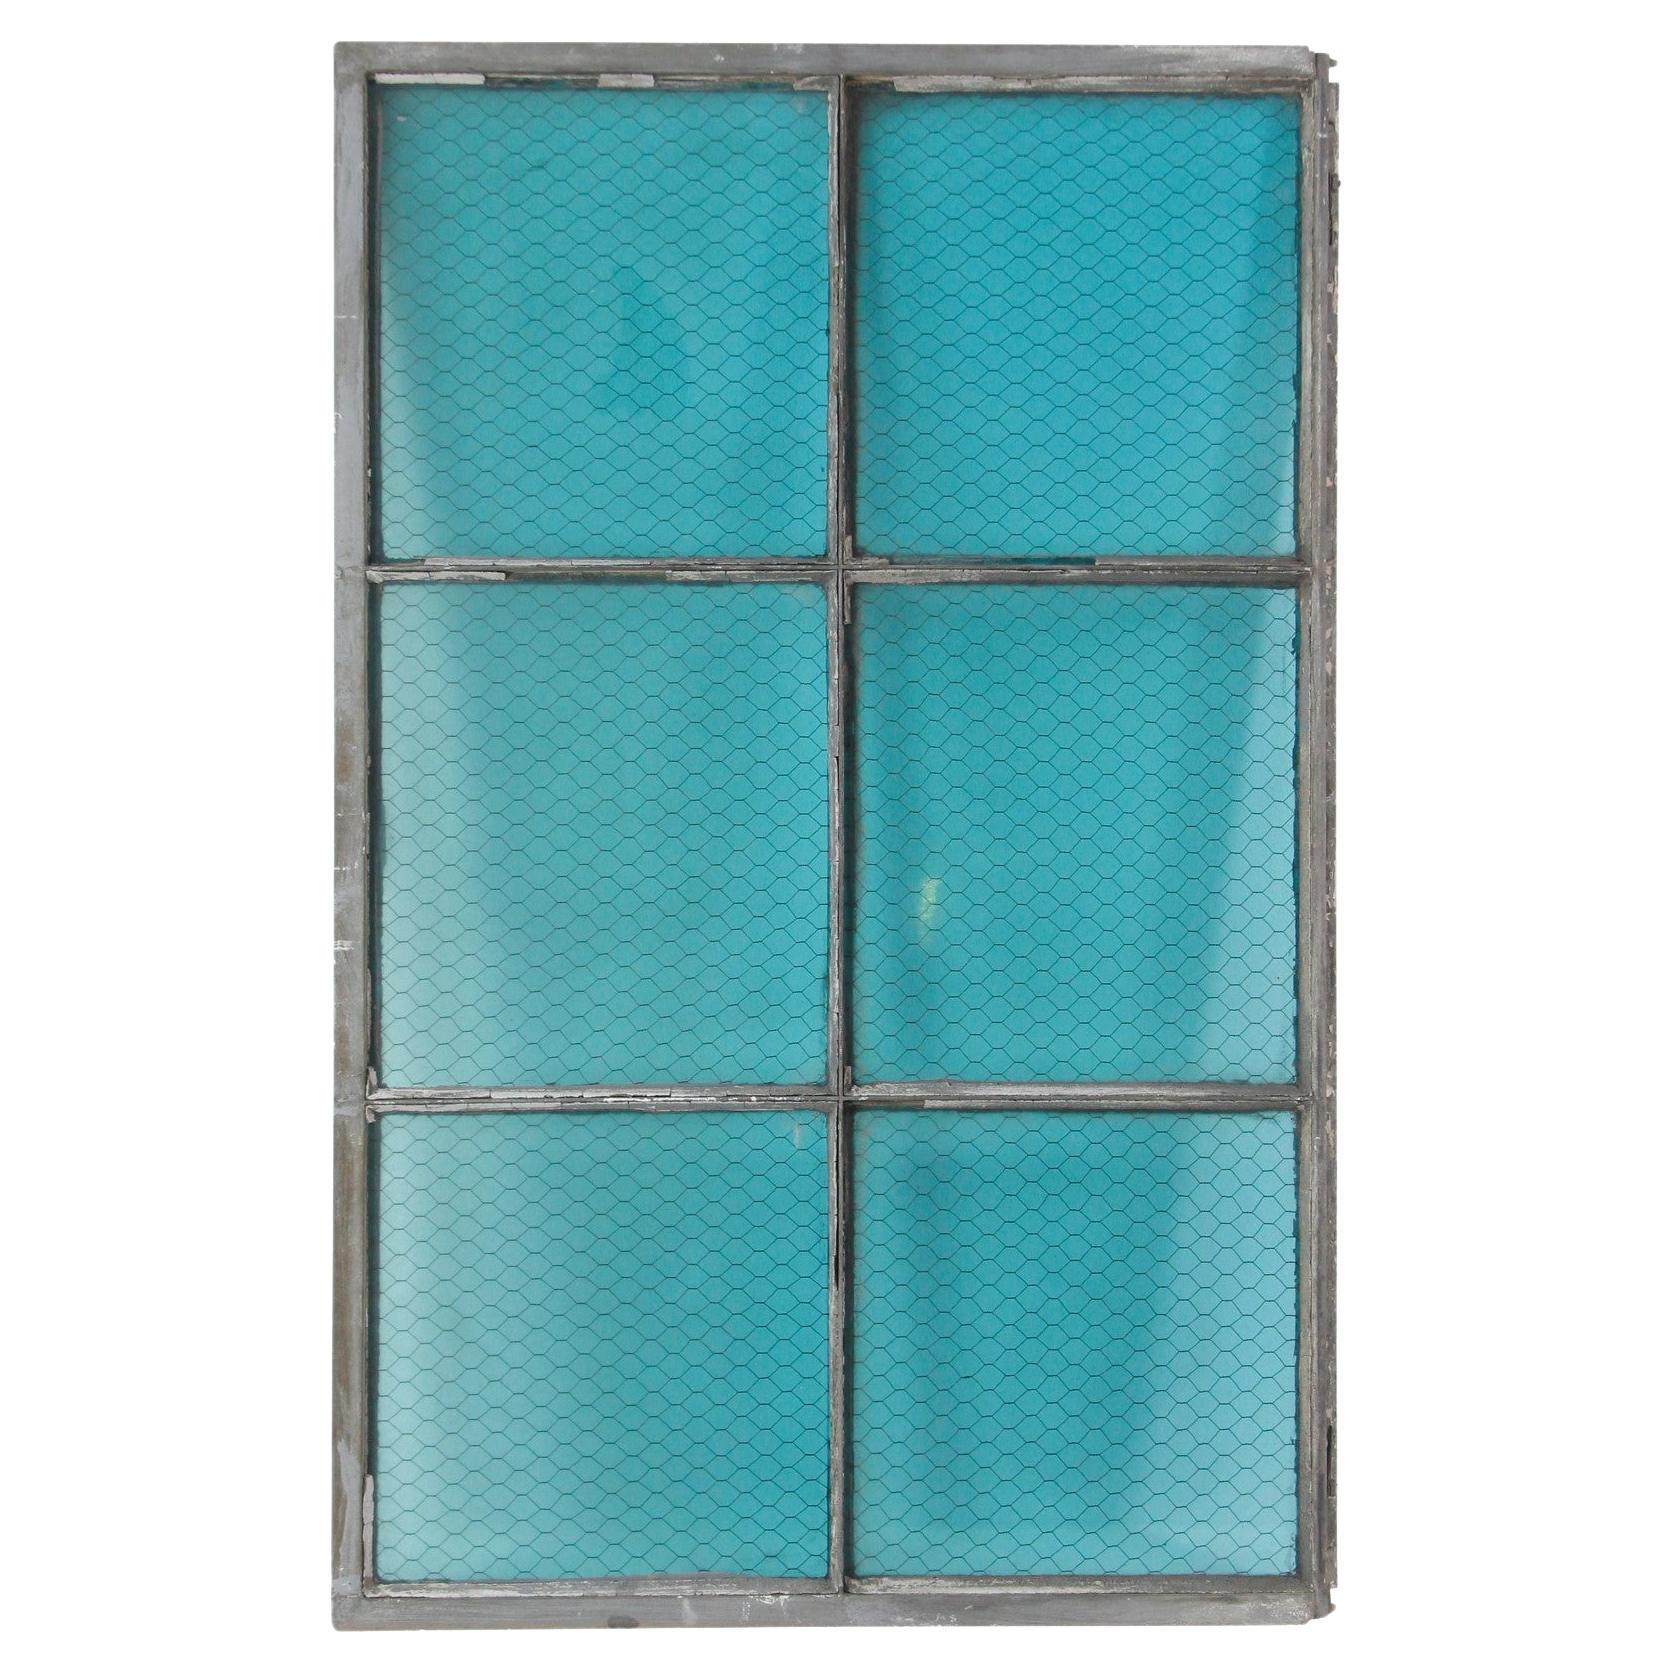 6 Pane Blue Chicken Wire Glass Iron Industrial Window